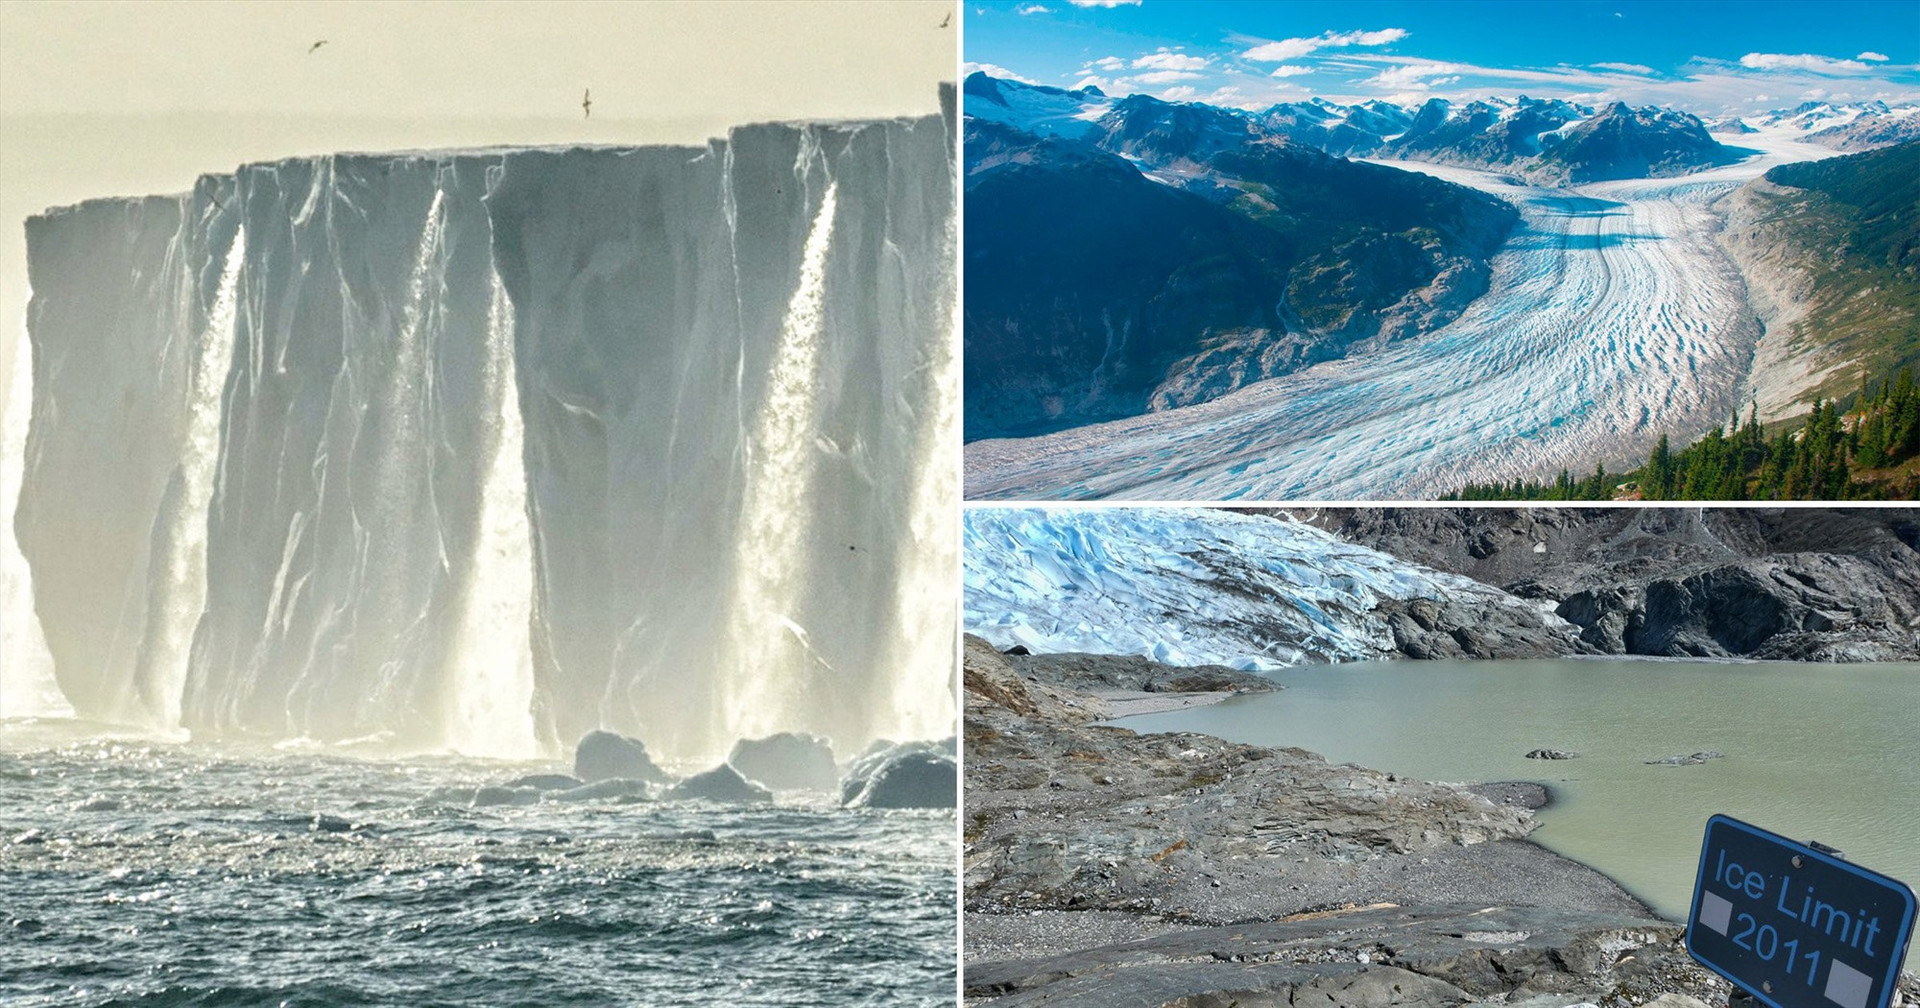 Thế giới có thể mất đi 10% sông băng vào năm 2020. Ảnh: laptrinhx.com